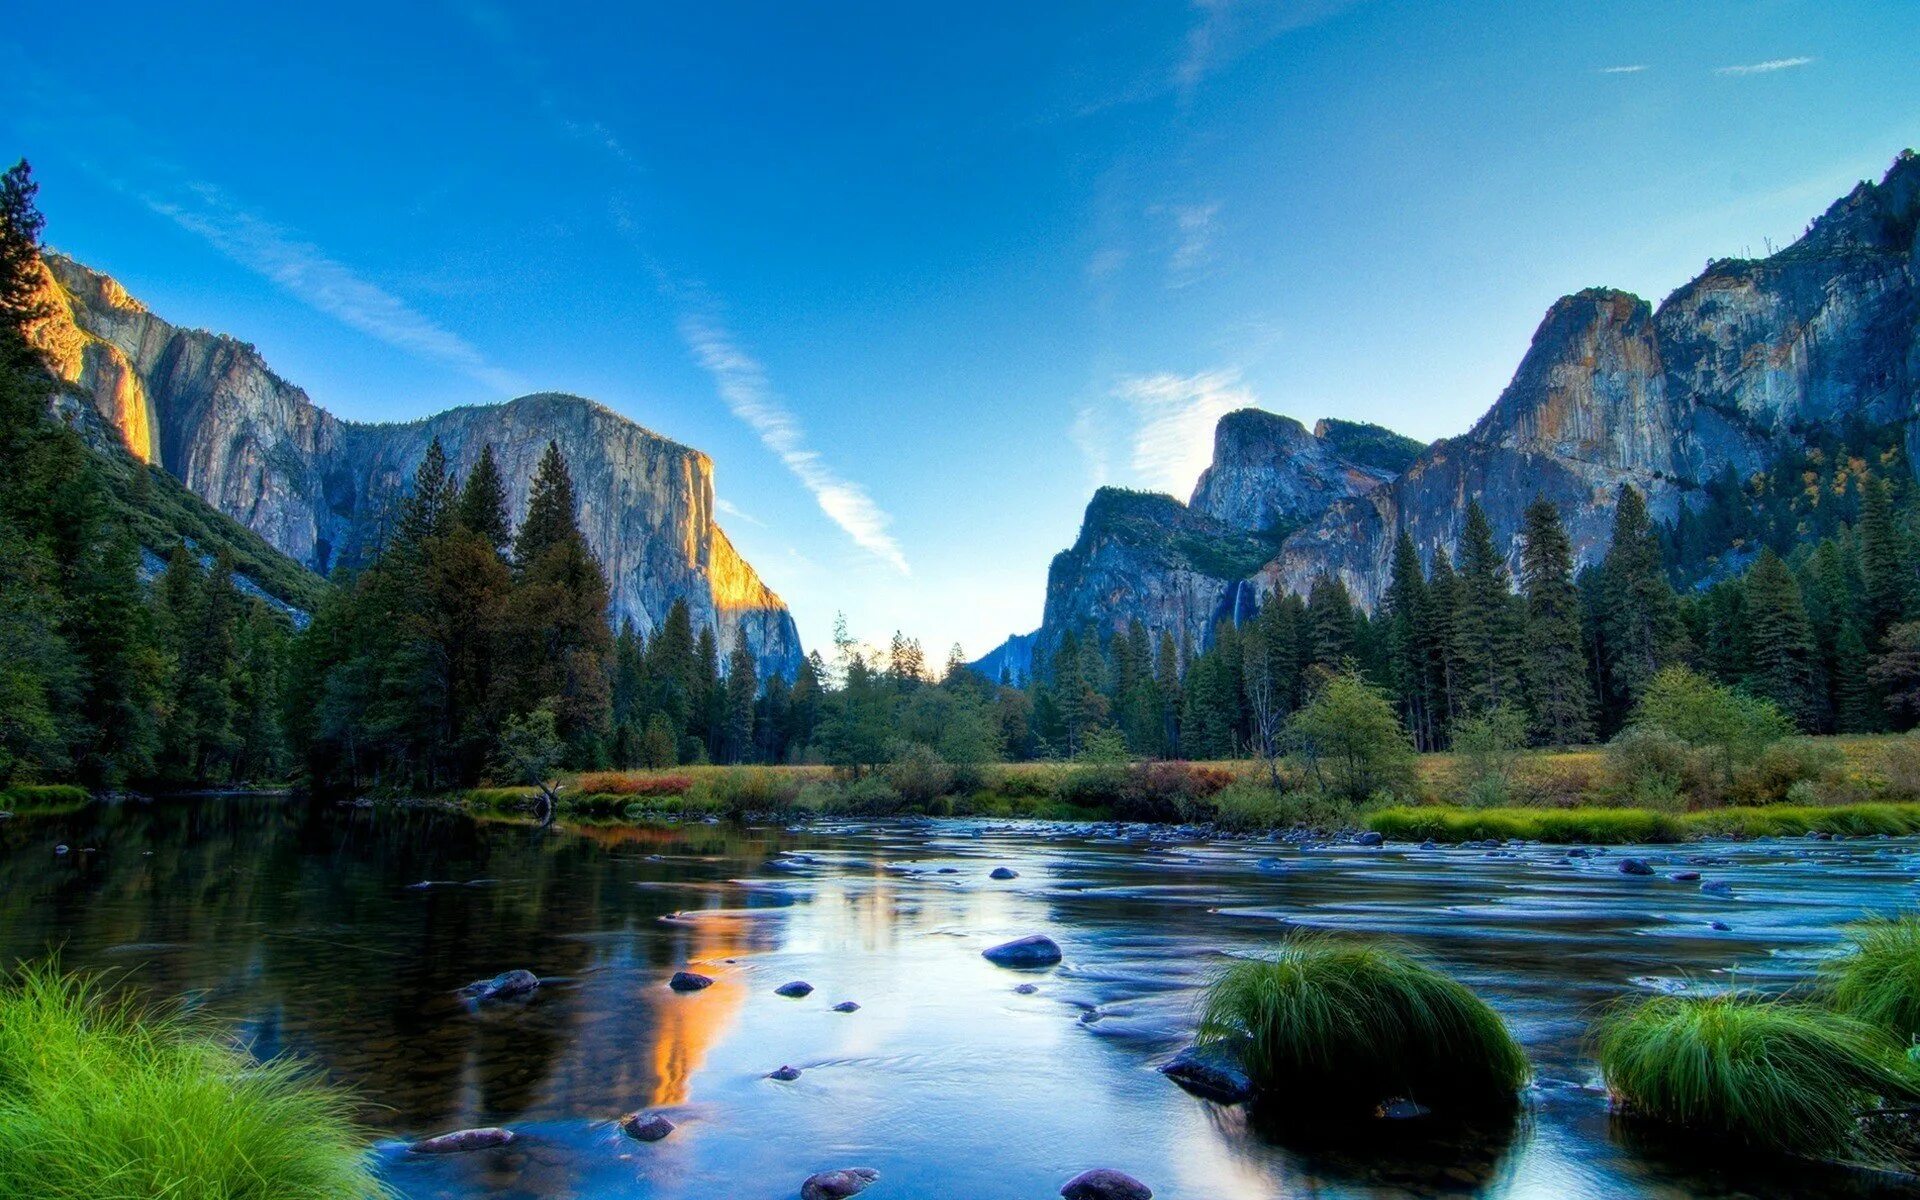 Йосемити национальный парк. Долина Йосемити, США. Горы озеро Yosemite National Park. Йосемити национальный парк прозрачное озеро.